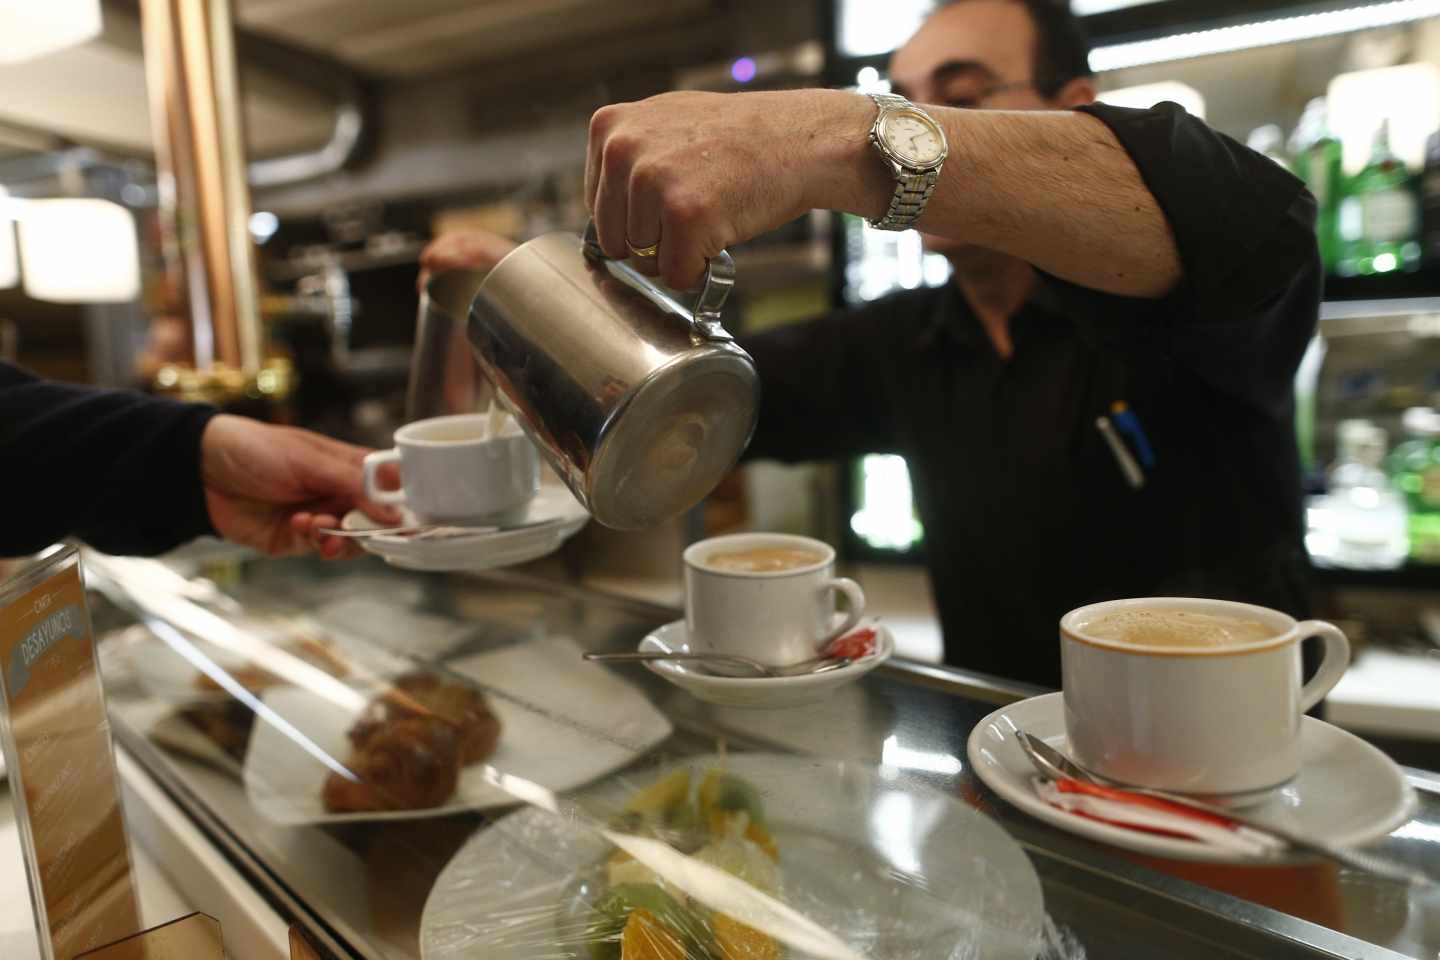 Un camarero sirve unos cafés dentro de un bar